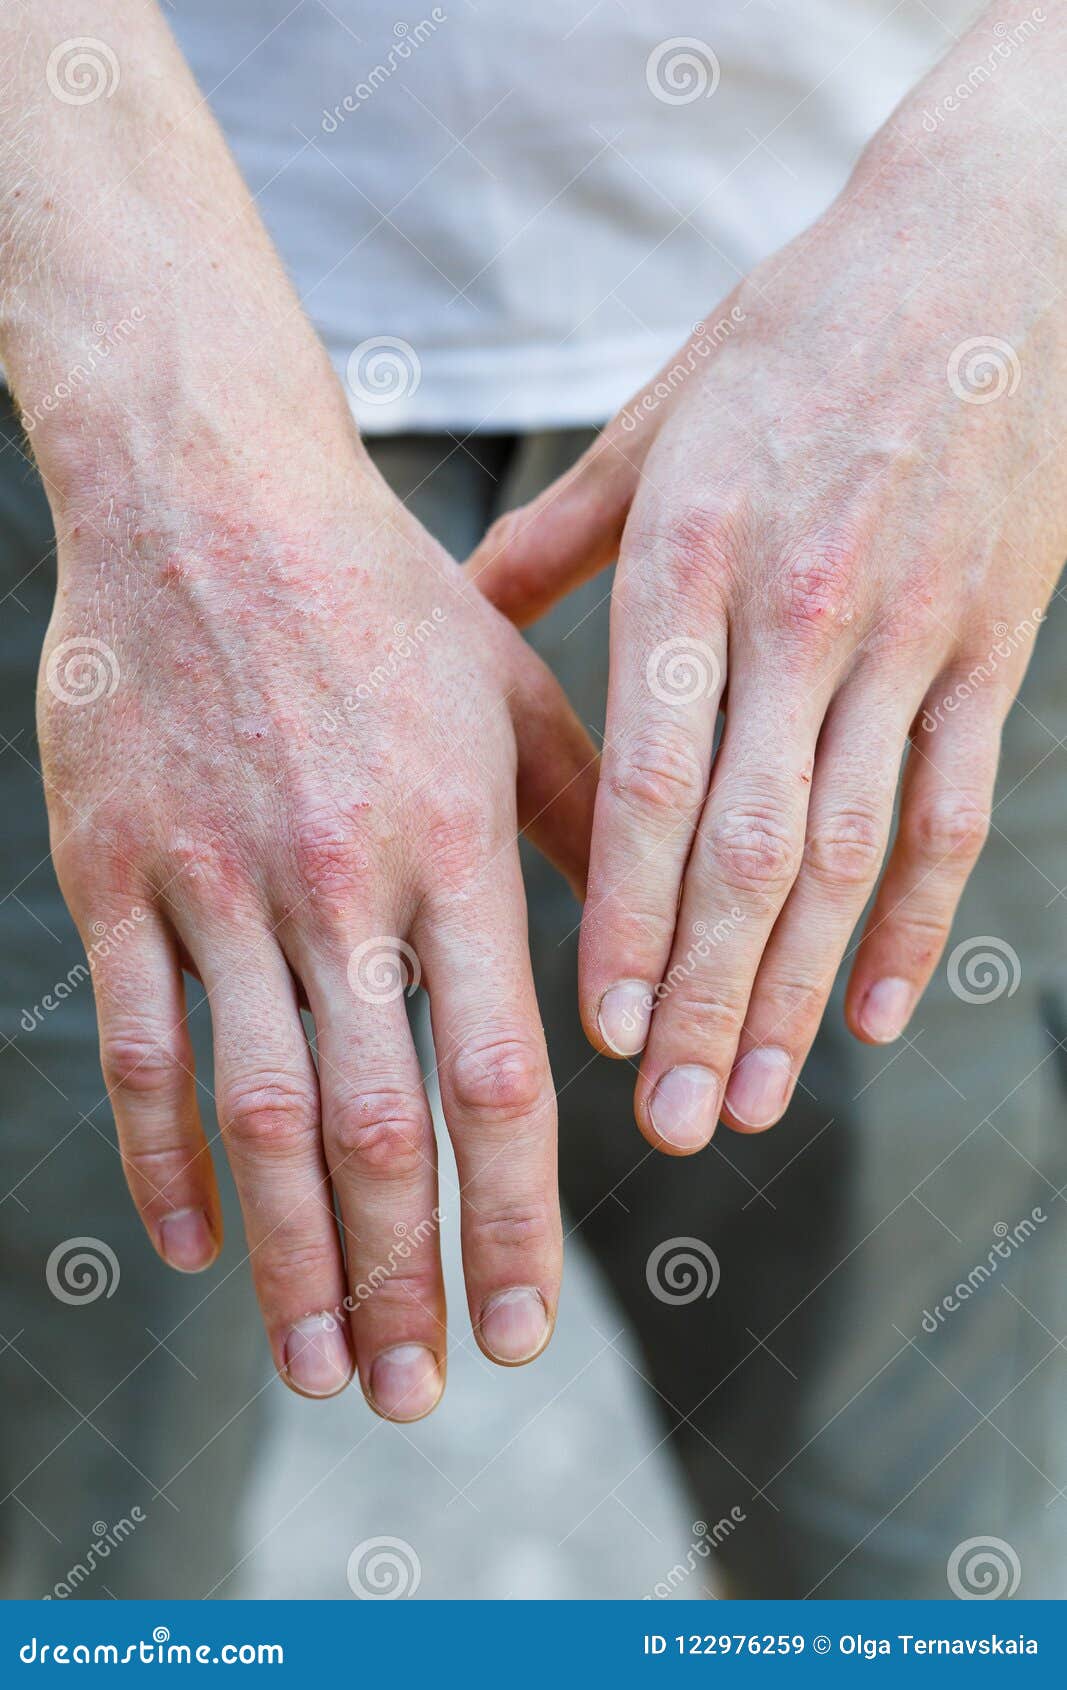 plaque psoriasis hands pictures vörös foltok jelentek meg a borjún